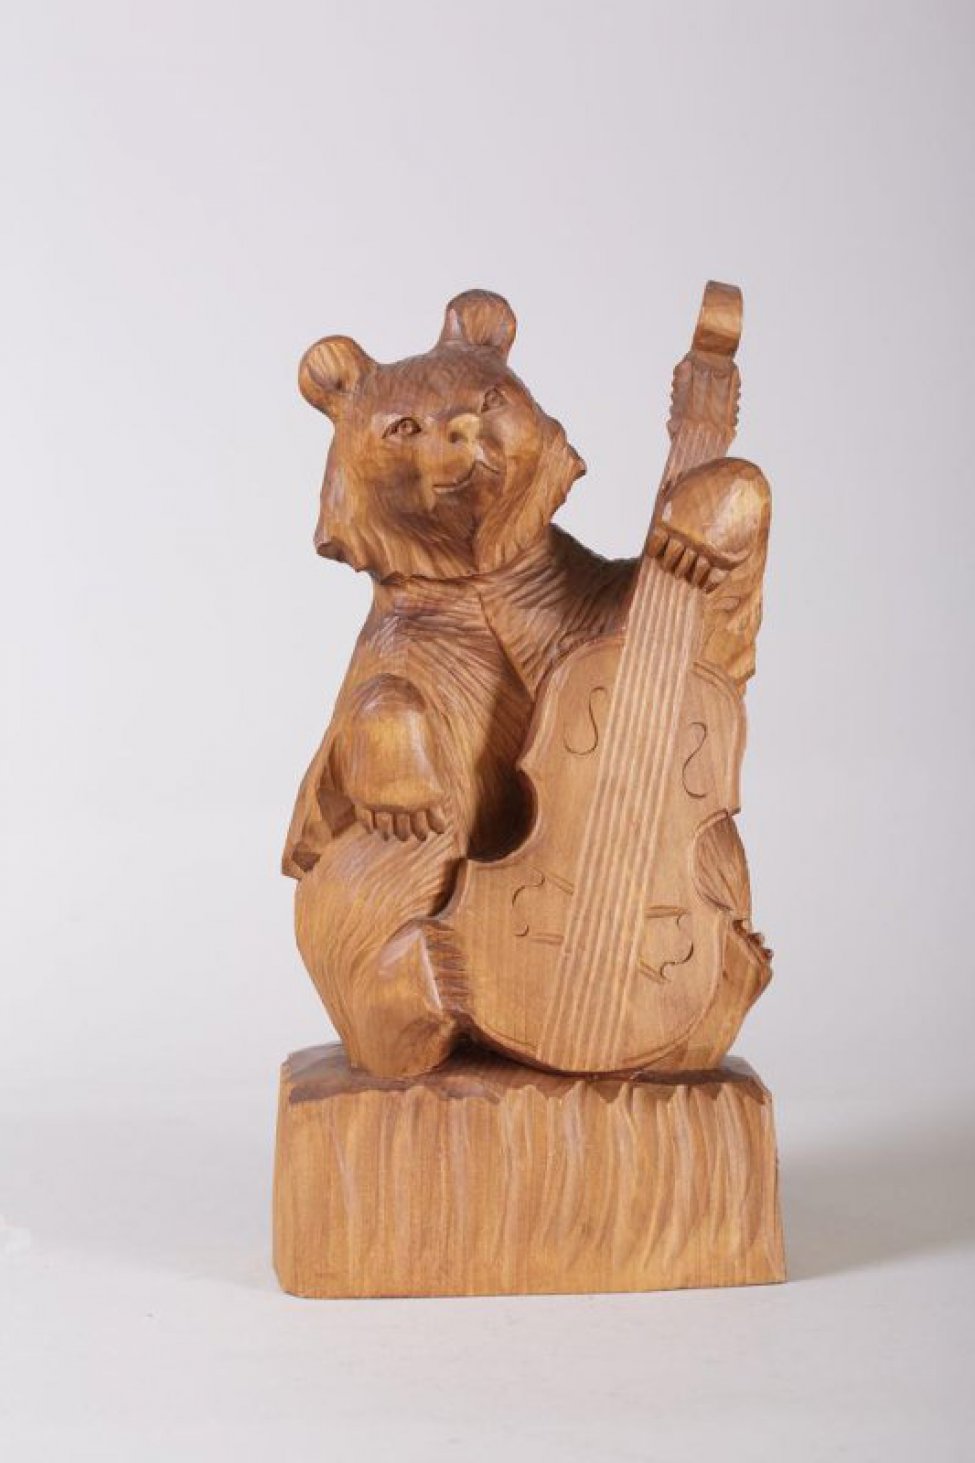 Медведь коричневого цвета сидит, свесив переднюю правую лапу, остальными лапами он держит стоящую перед ним виолончель, подставка семигранная неправильной формы.